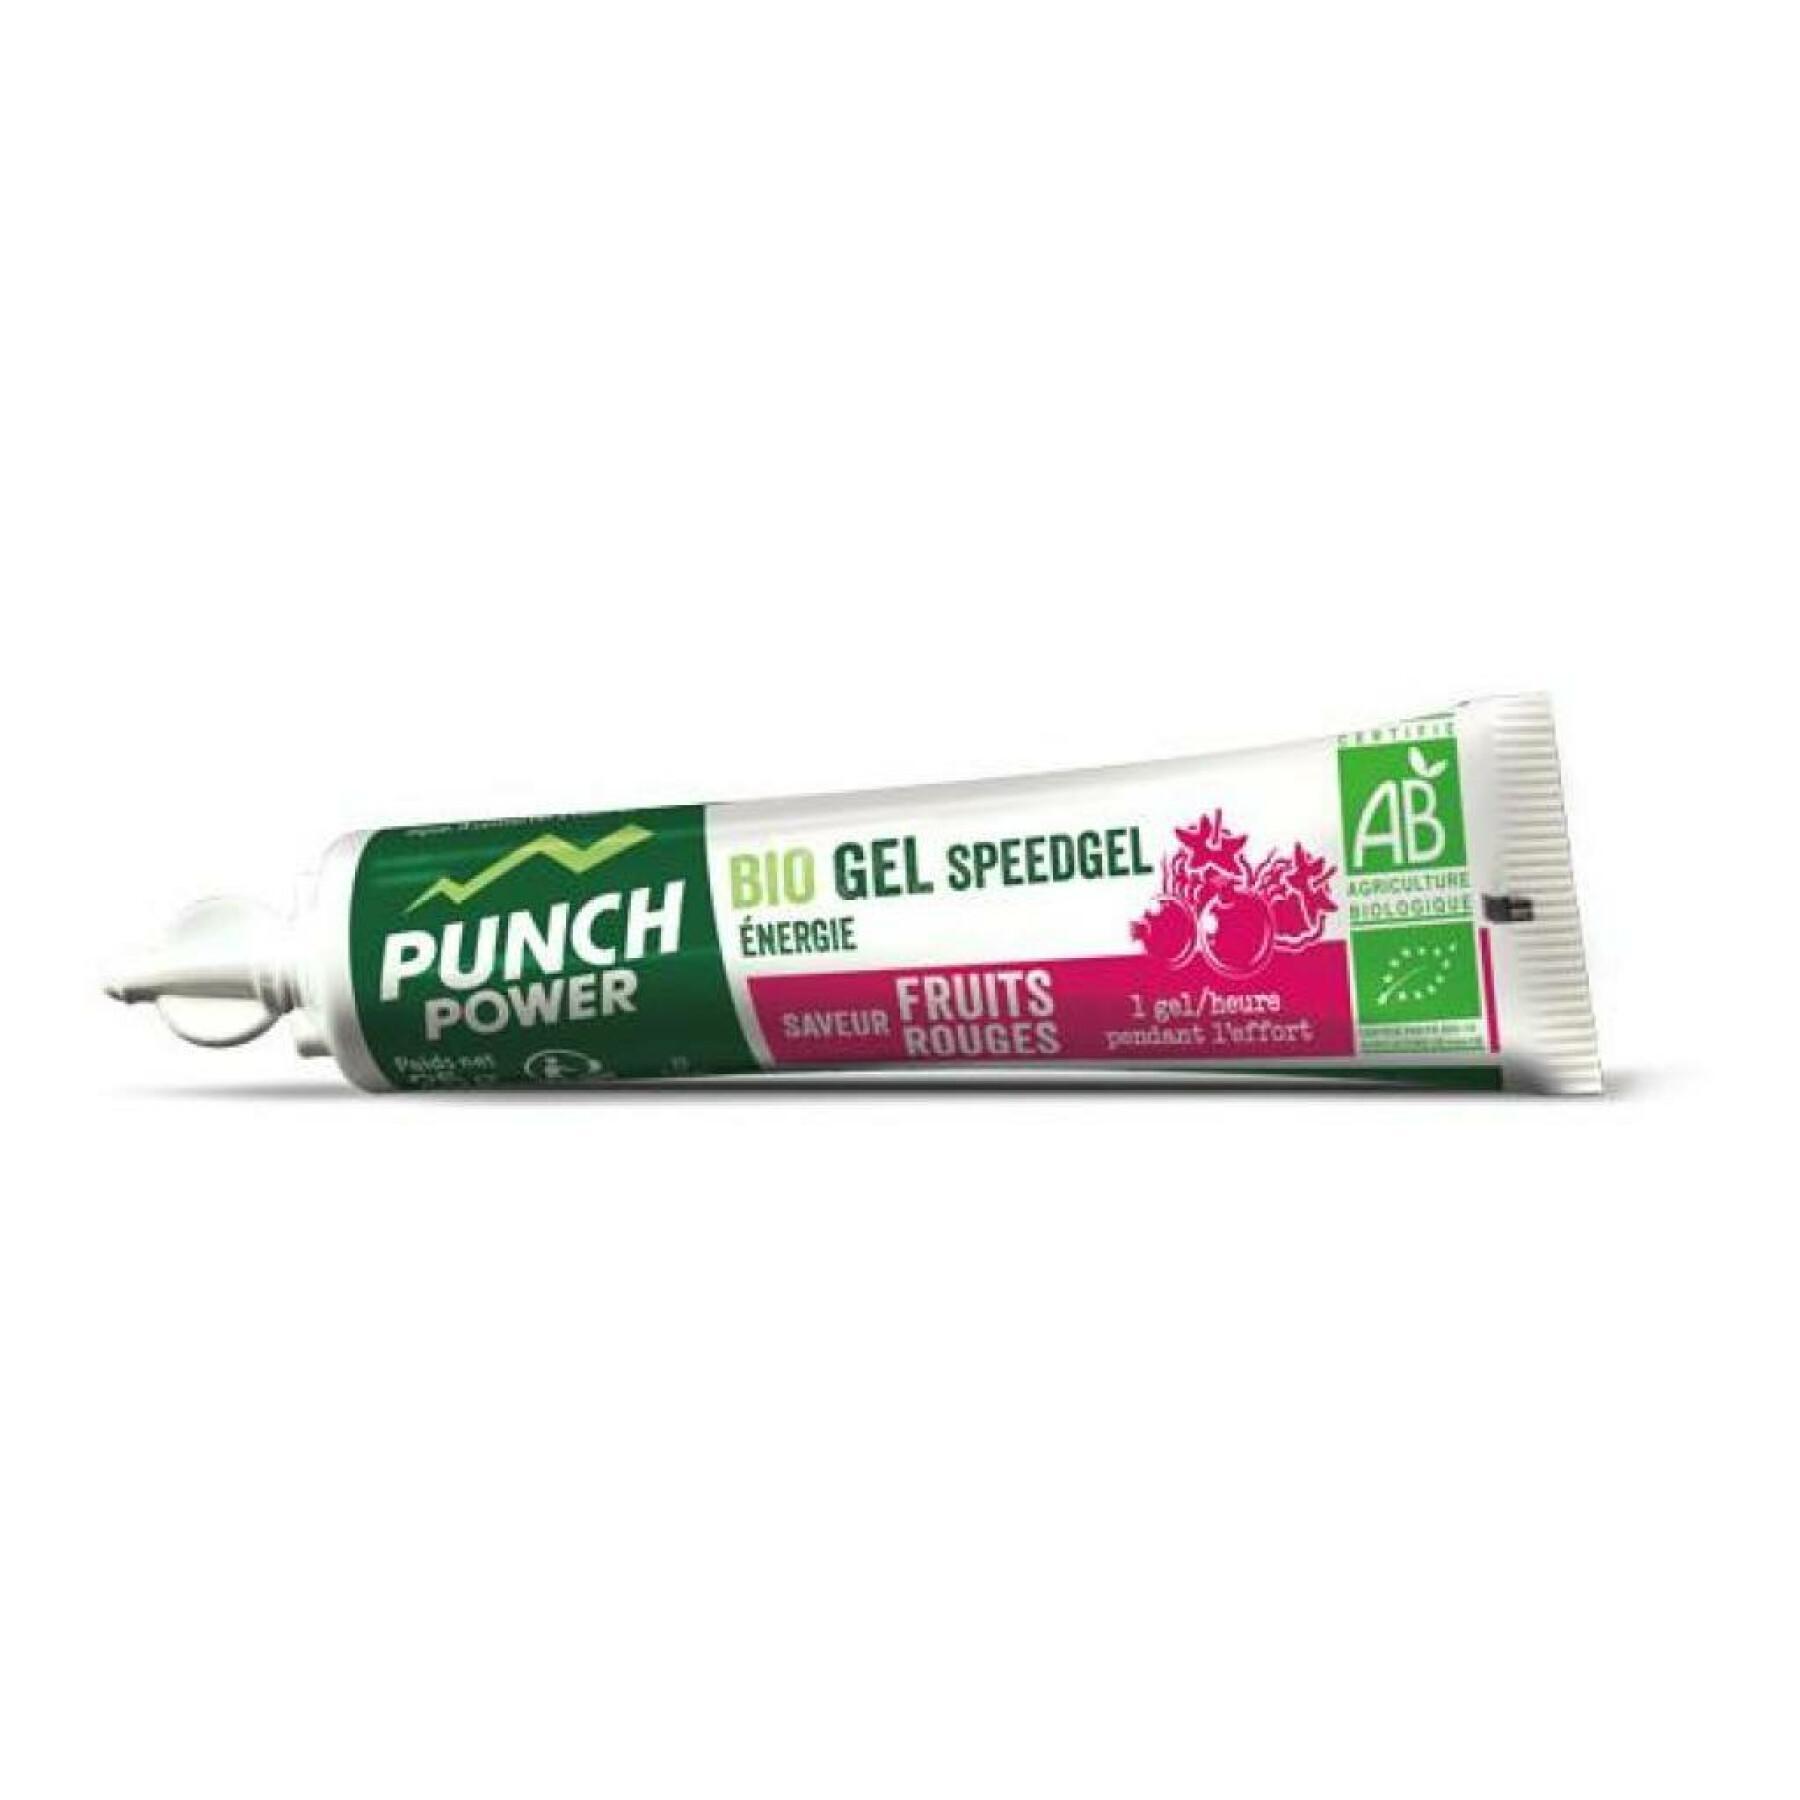 Energie gel Punch Power Speedgel Fruits rouges (x40)